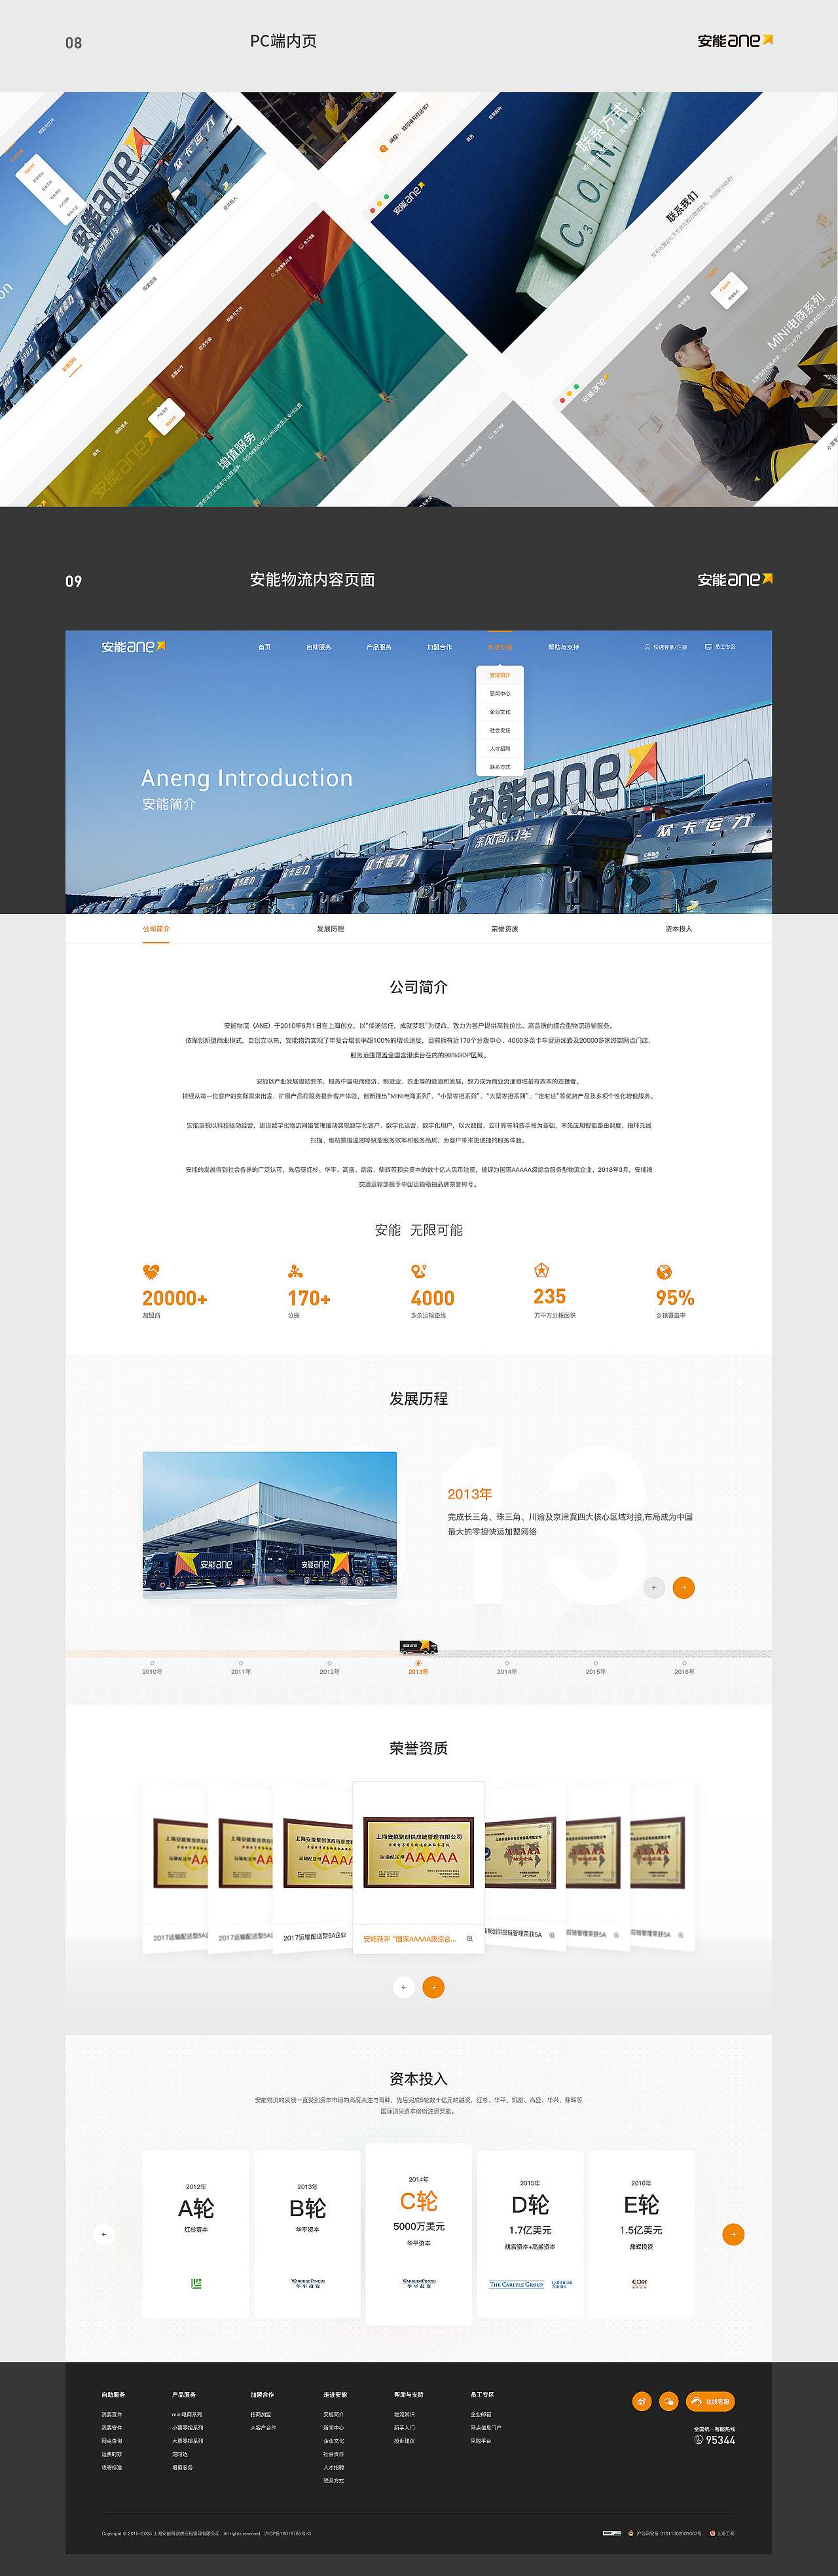 【合集】Brand website design